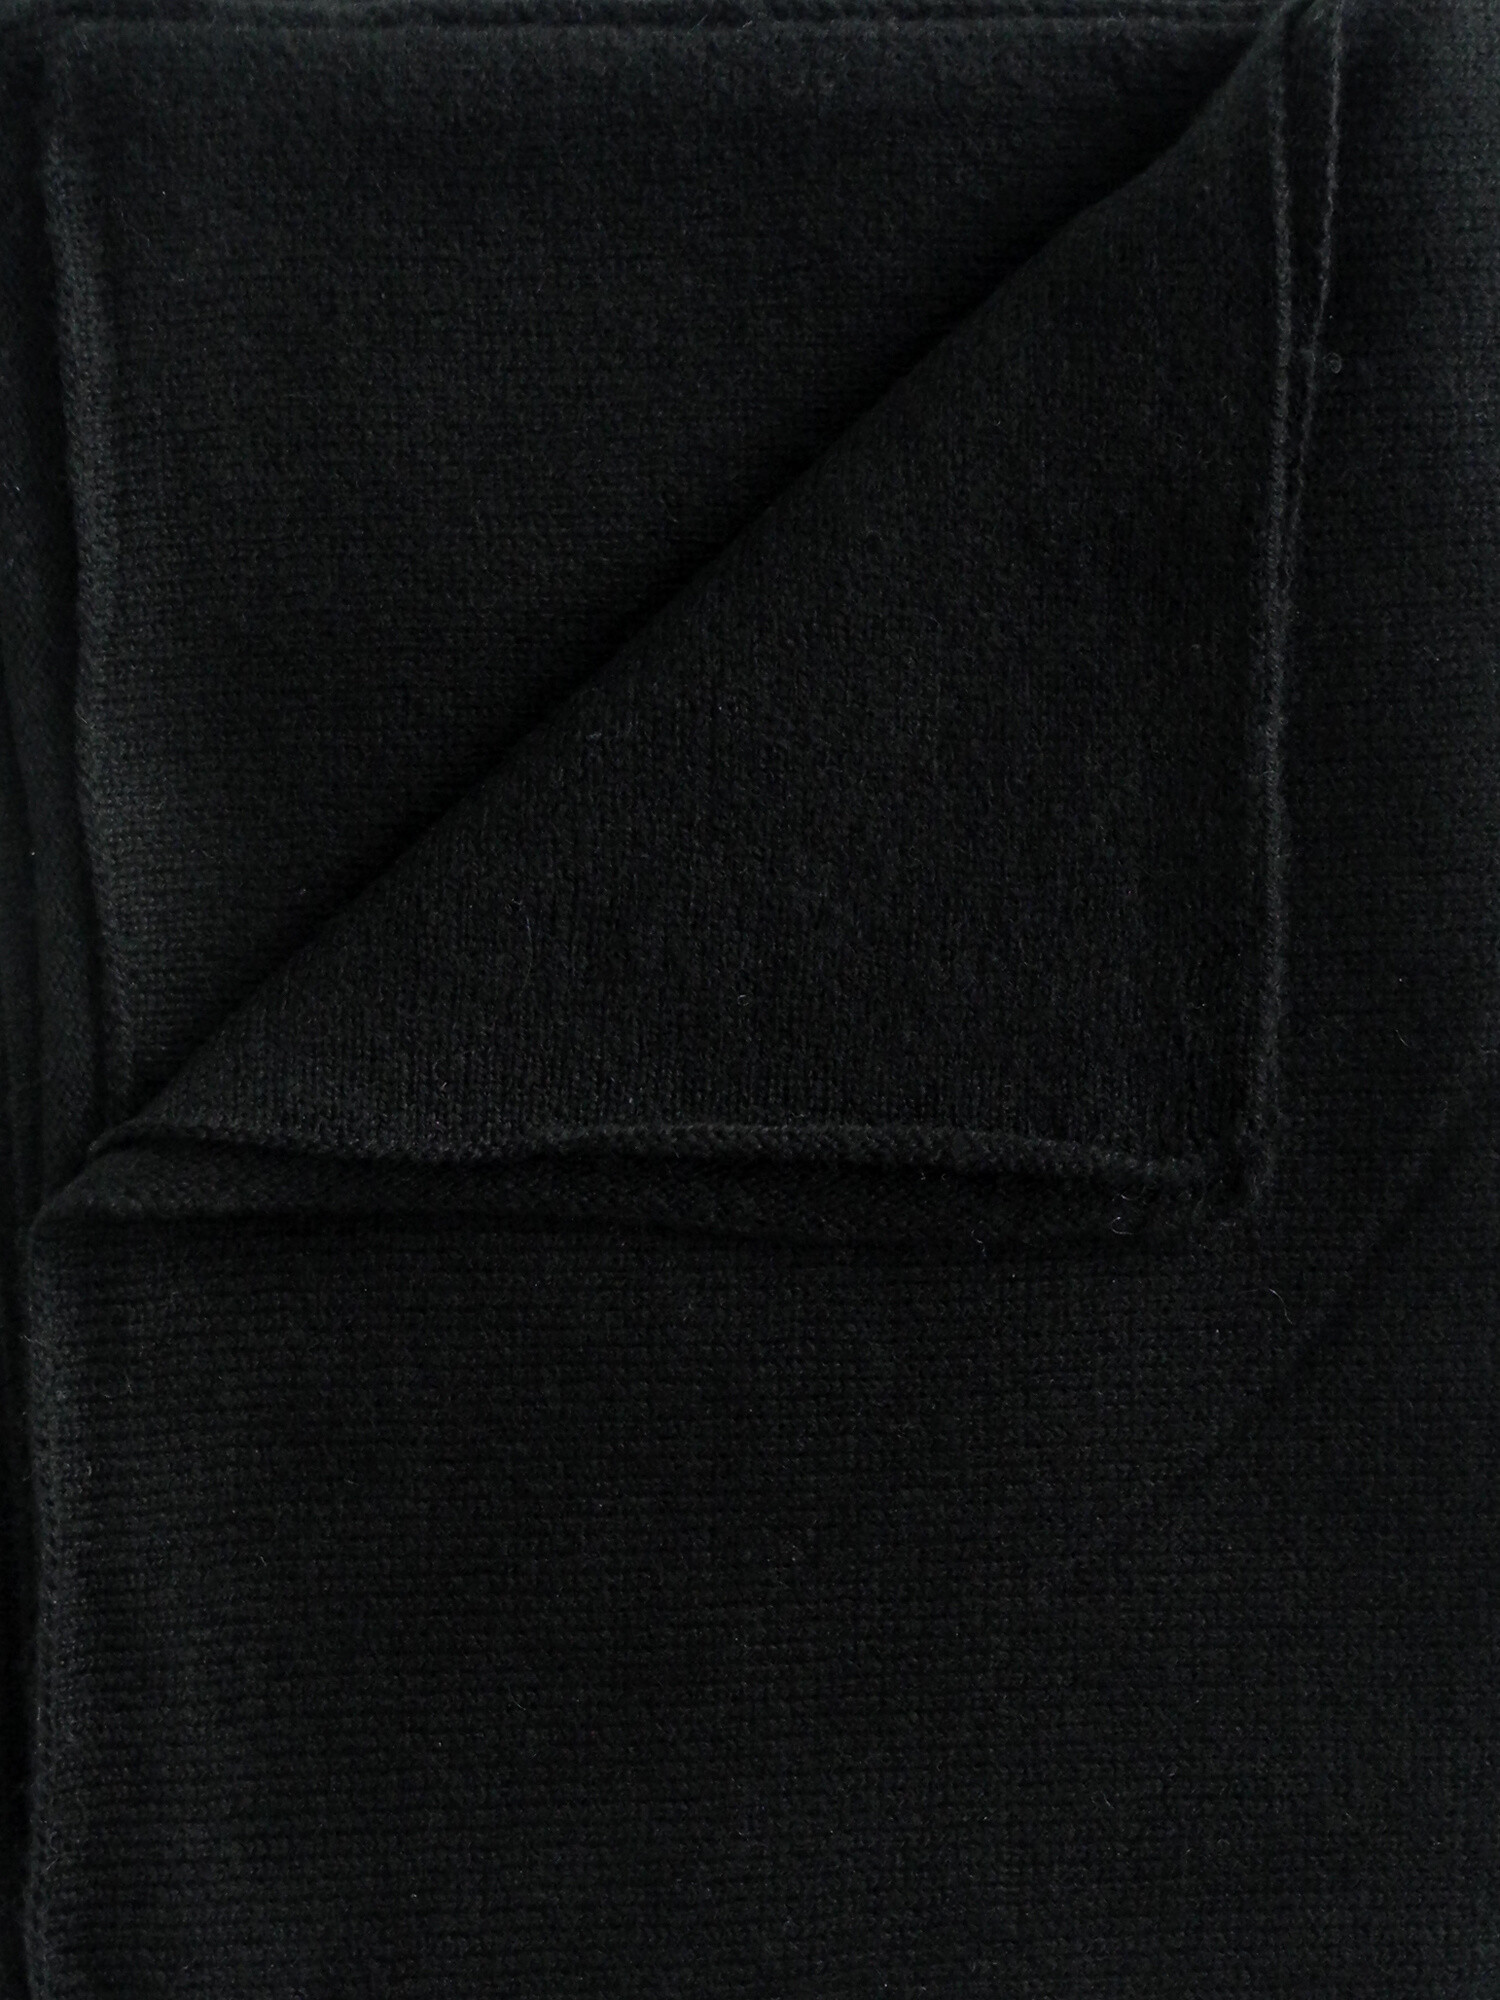 C.O.S.Y by SjaalMania Sjaal Cosy 100% Cashmere Solid Black